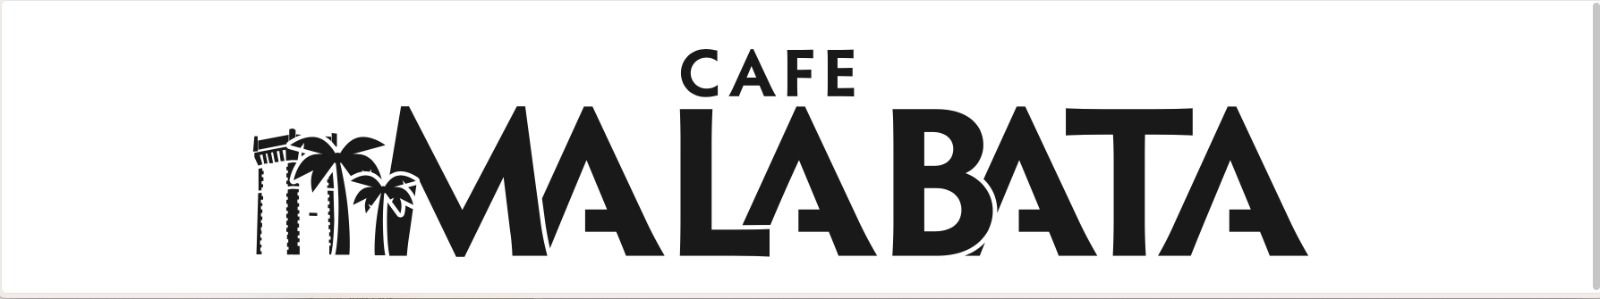 Cafe Malabata